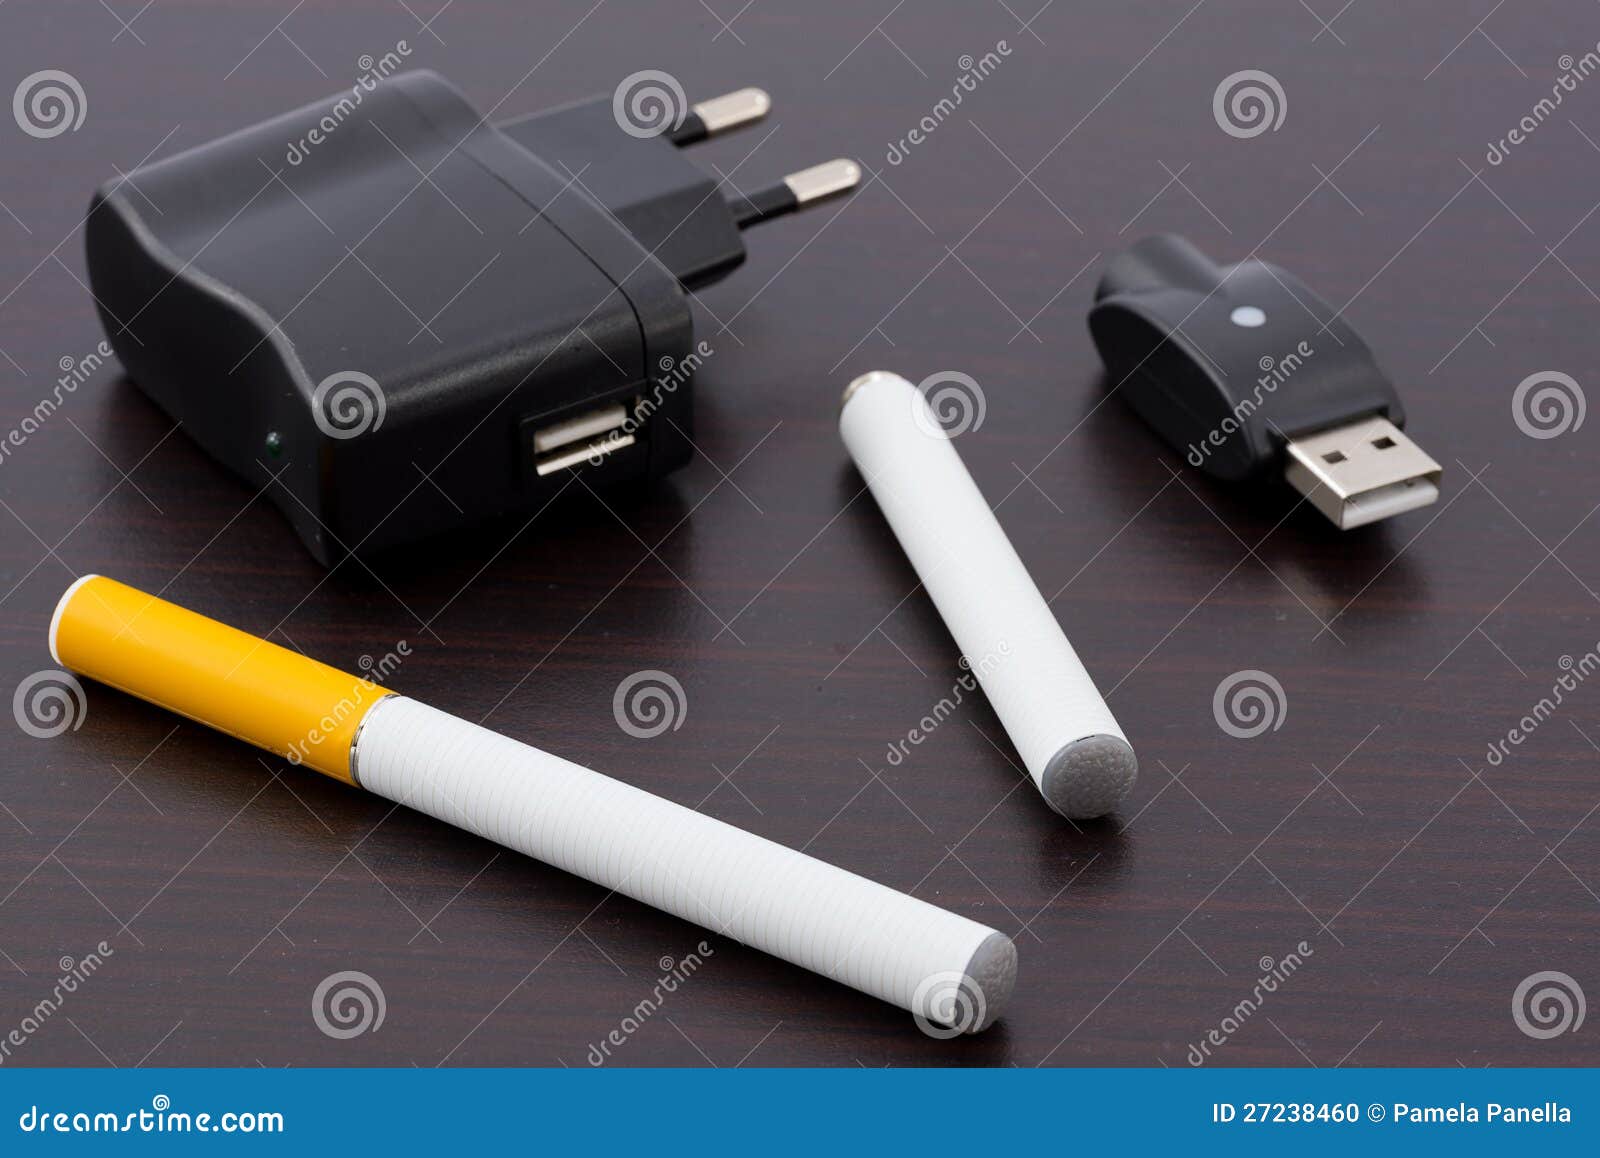 Электронная сигарета 4200 затяжек зарядкой. Смокер электро сигарета зарядник. Зарядное для электронной сигареты. Одноразовые электронные сигареты с зарядкой.